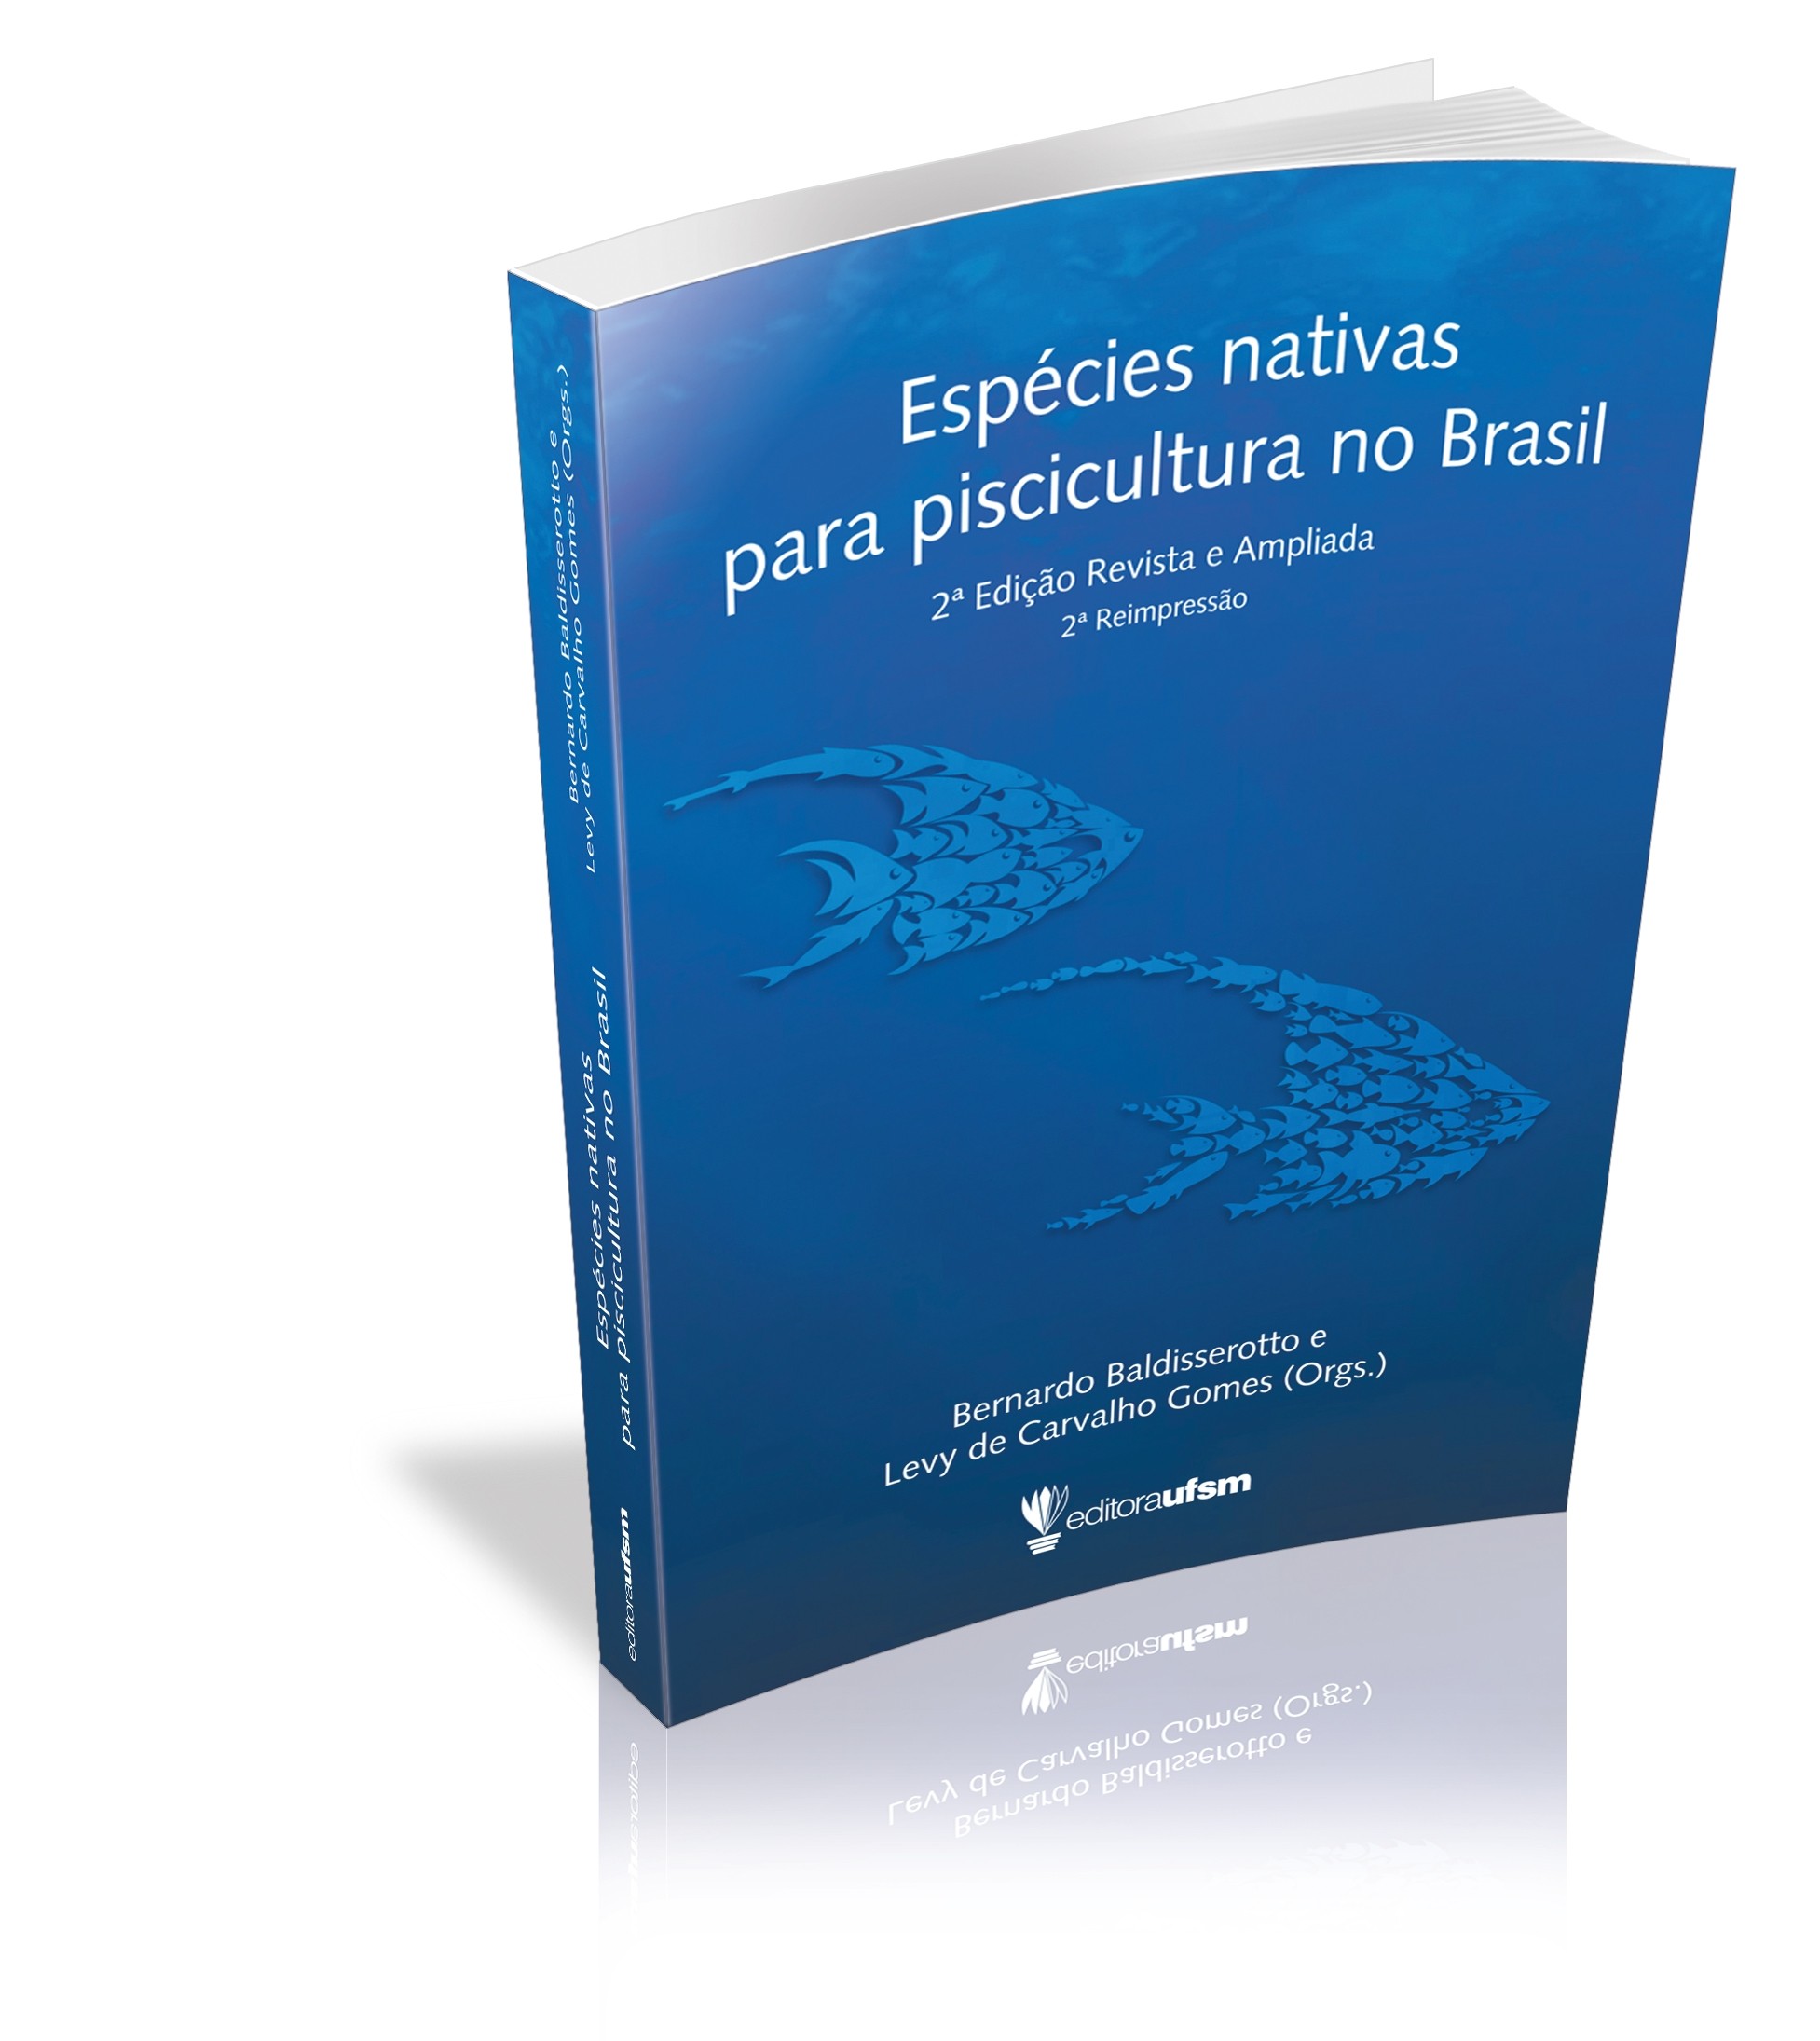 Capa do livro Espécies nativas para piscicultura no Brasil - 2ª edição revista e ampliada - 2ª reimpressão